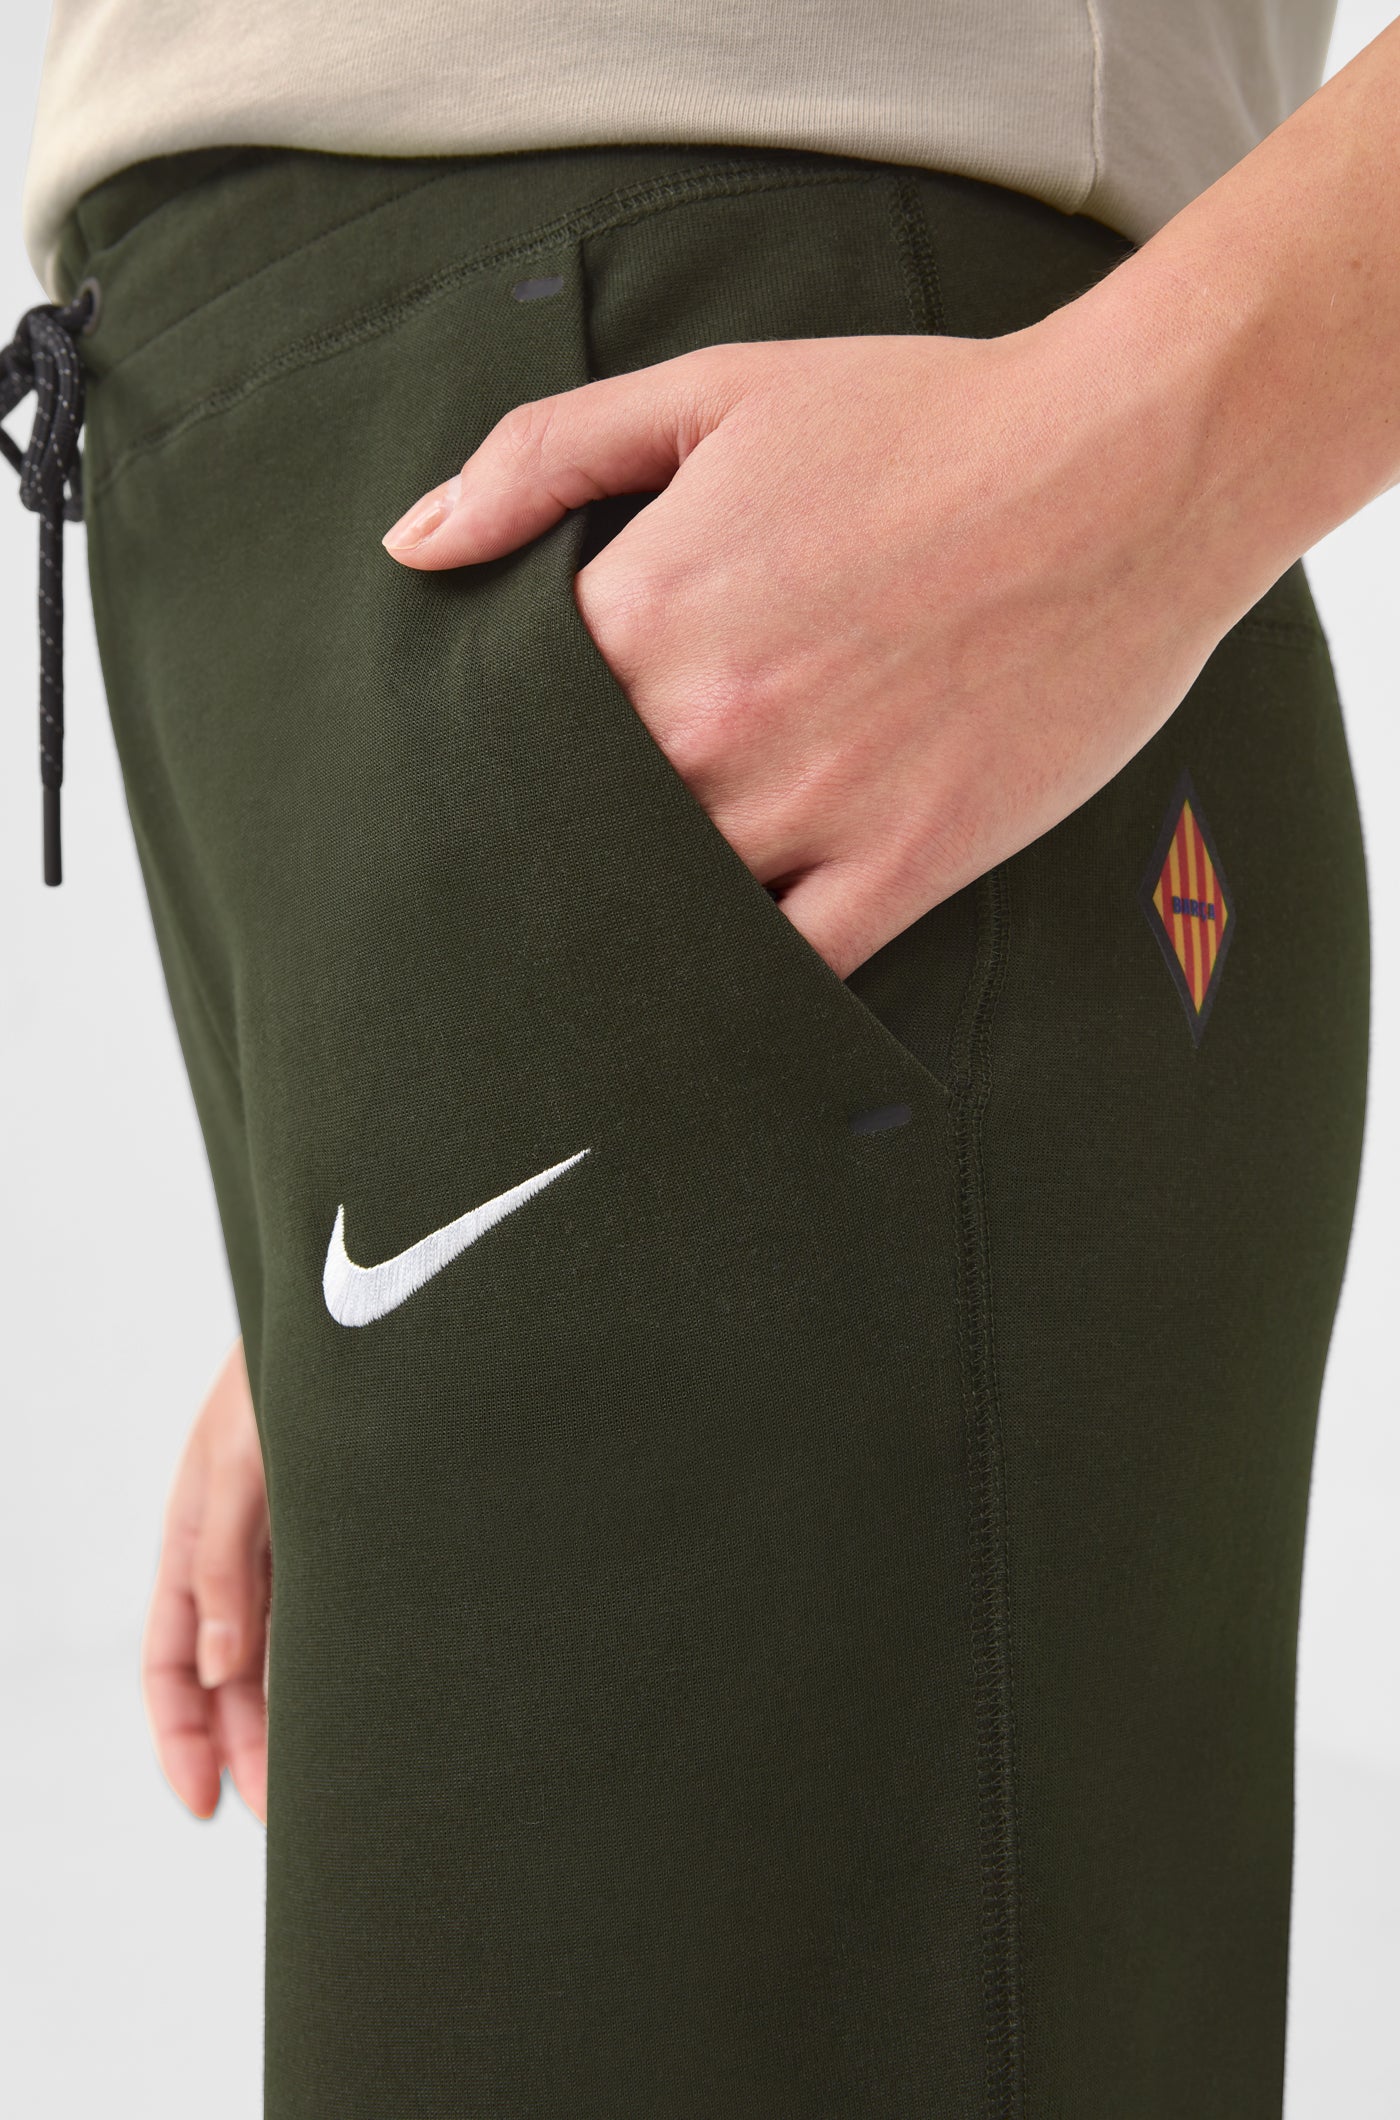 Pantalon vert Barça Nike - Femme